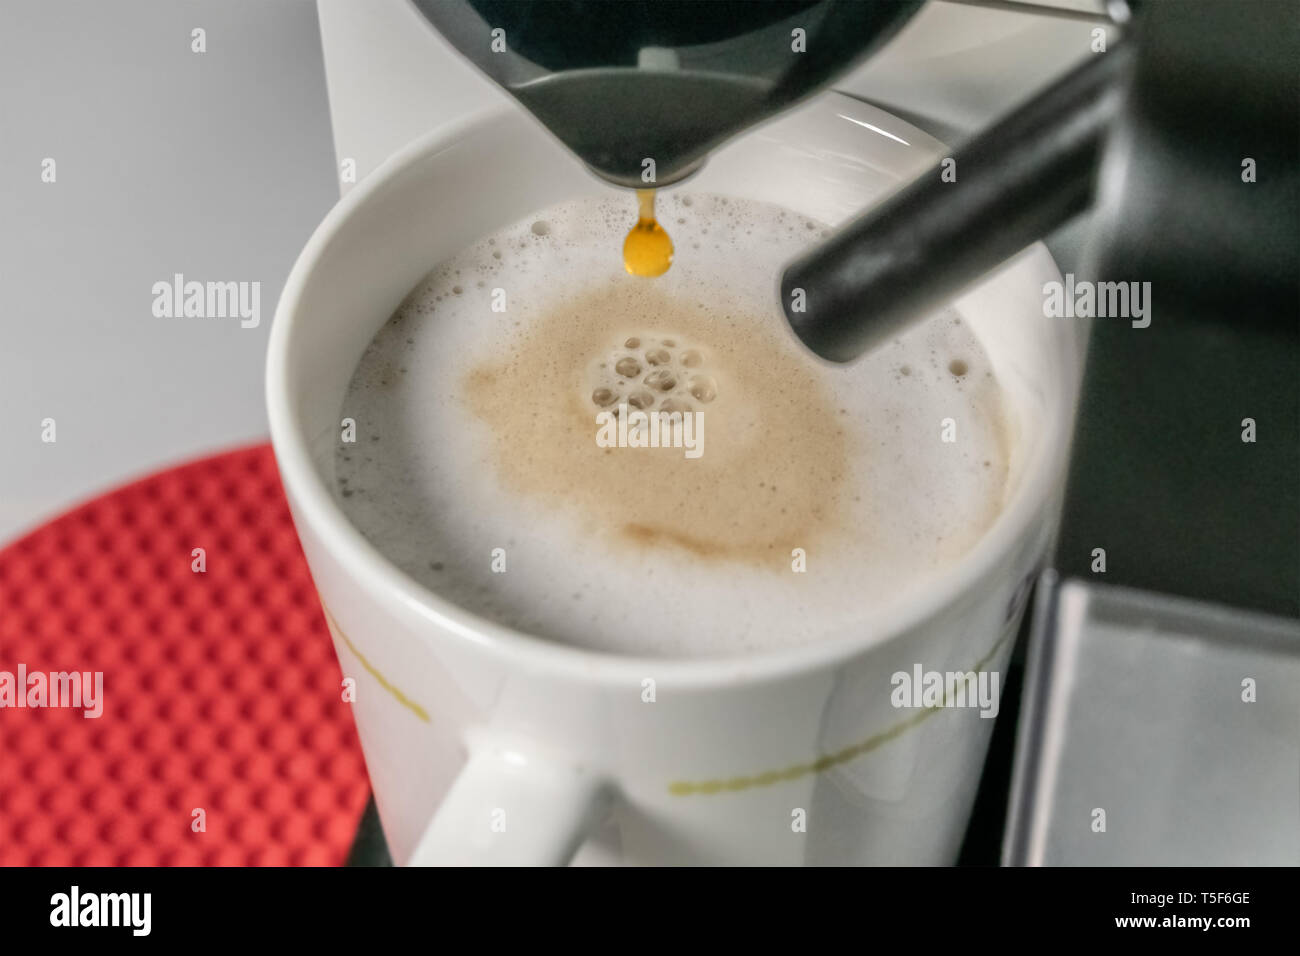 Die Cappuccino - Nahaufnahme von espresso Gießen aus der Kaffeemaschine. Cappuccino hat die wichtigsten Bestandteile sind Espresso, Milch. Unscharfer Hintergrund Stockfoto